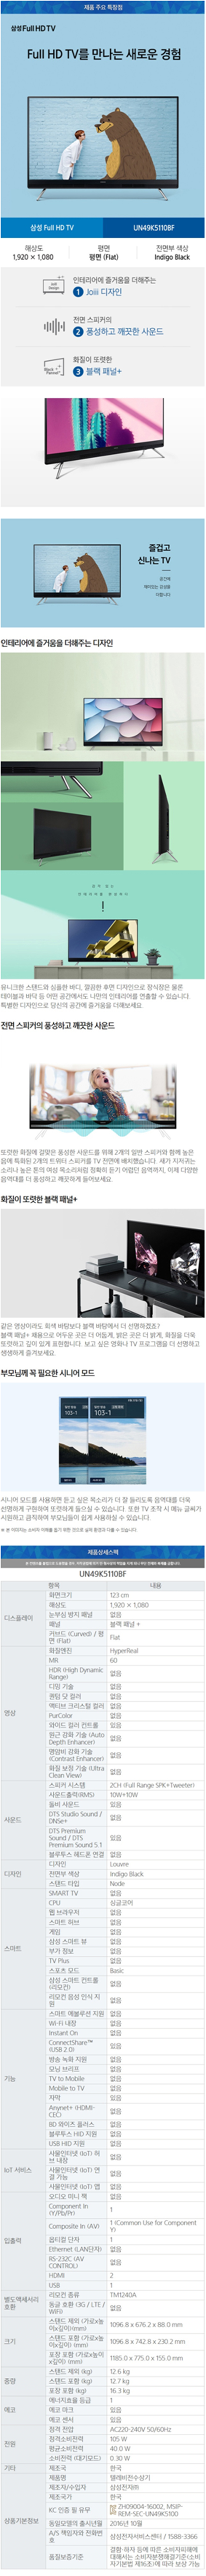 강남케이블 - 삼성 49인치 LED TV (UN49K5110BF) 상세보기